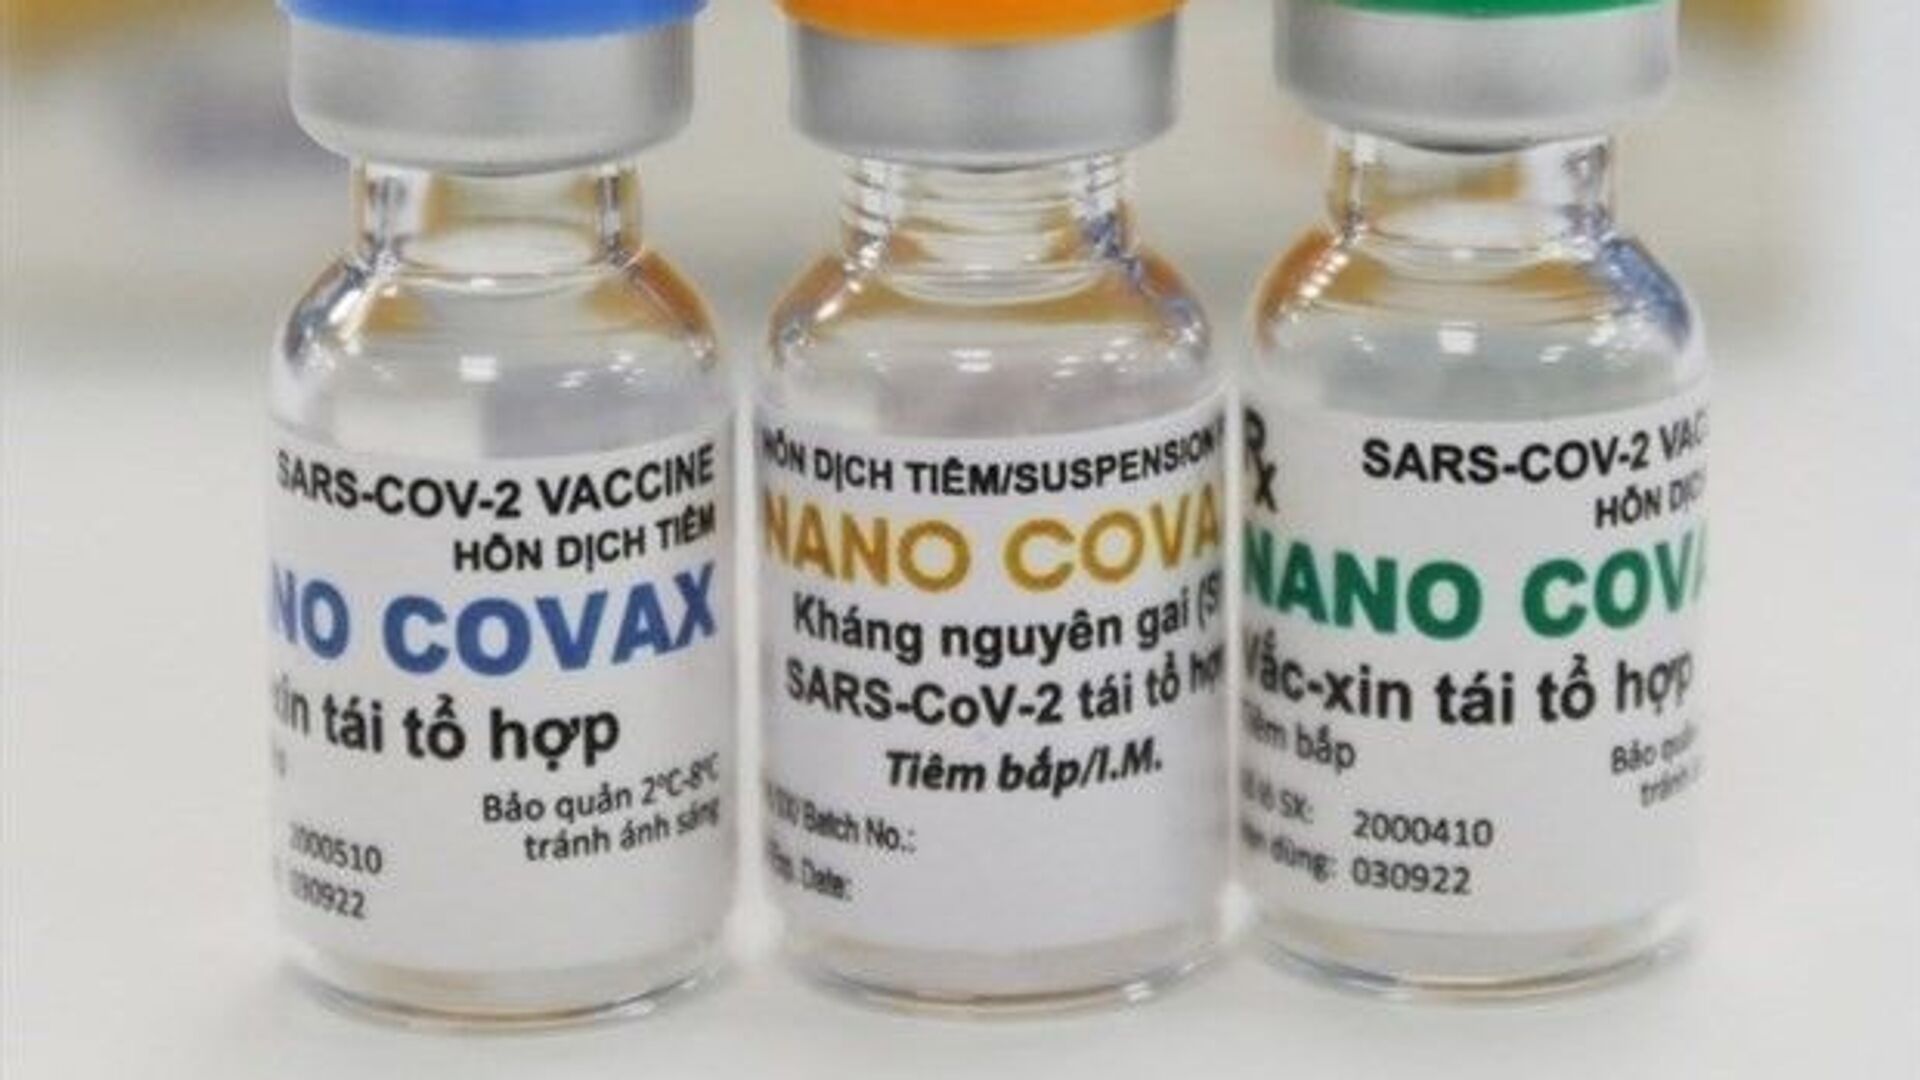 Vaccine Nano Covax được Hội đồng đạo đức thông qua, chờ cấp phép khẩn cấp - Sputnik Việt Nam, 1920, 30.08.2021